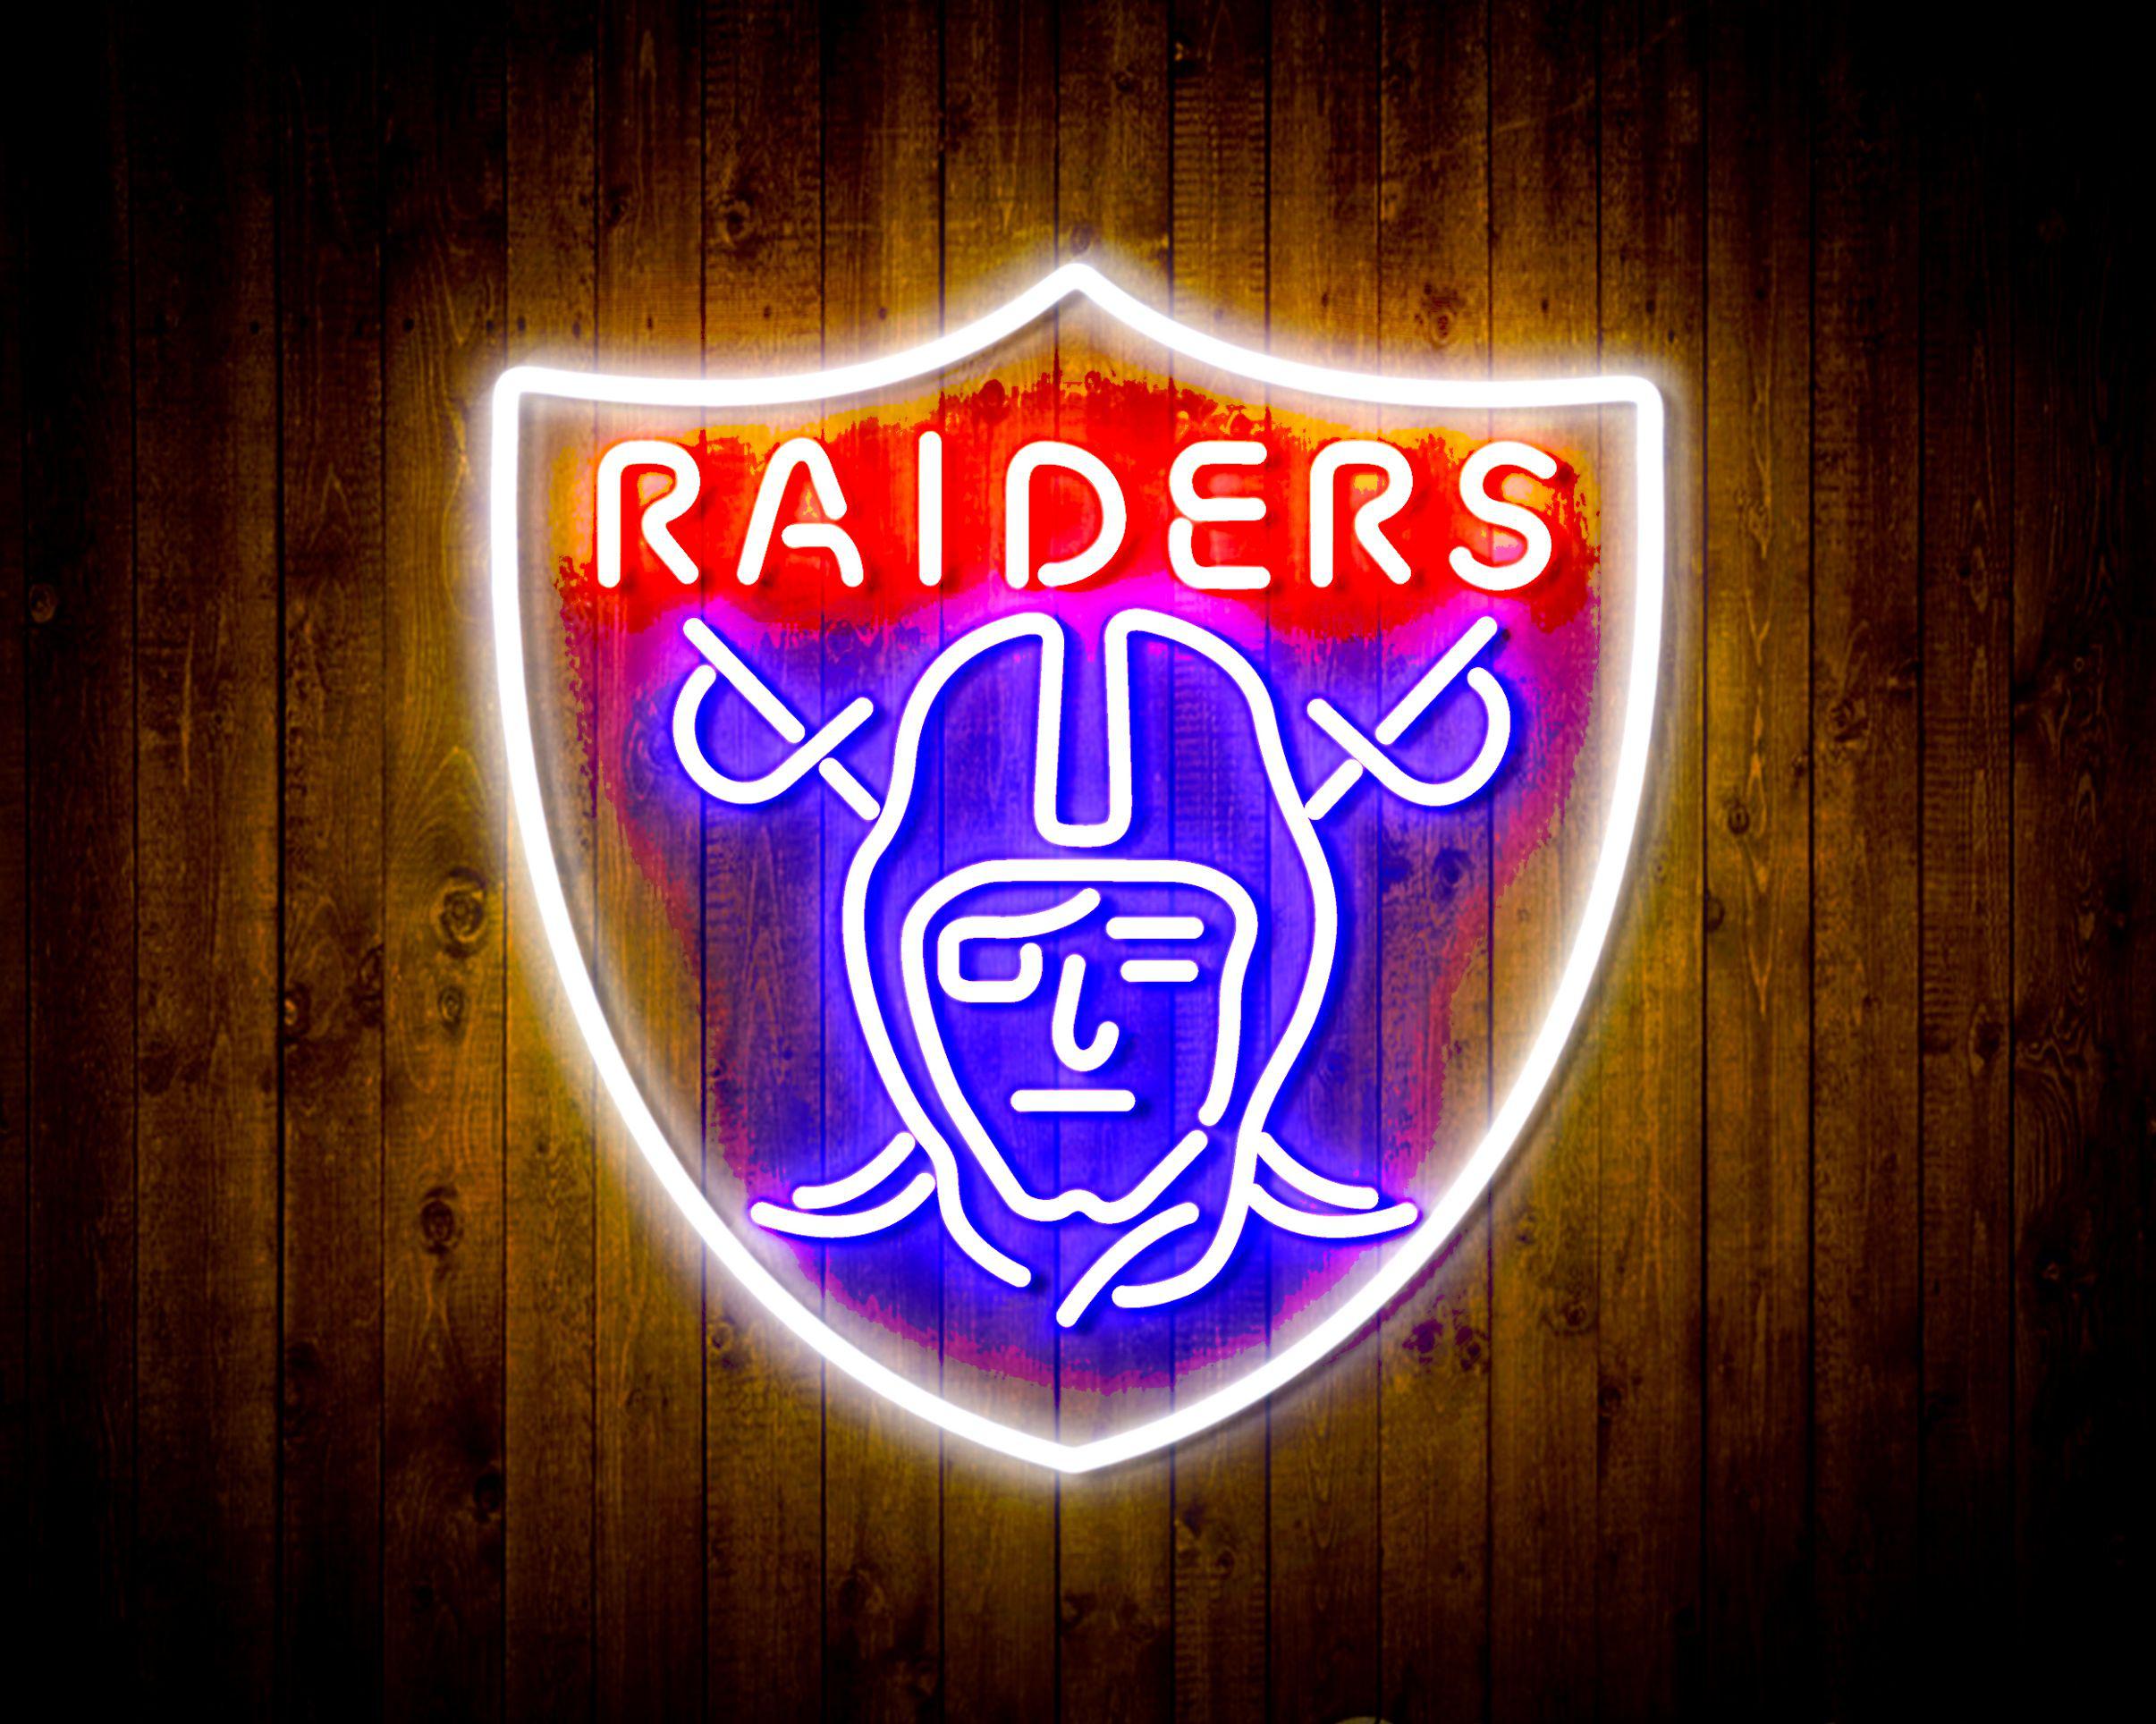 Las Vegas Raiders LED Lighted Sign - Pewter